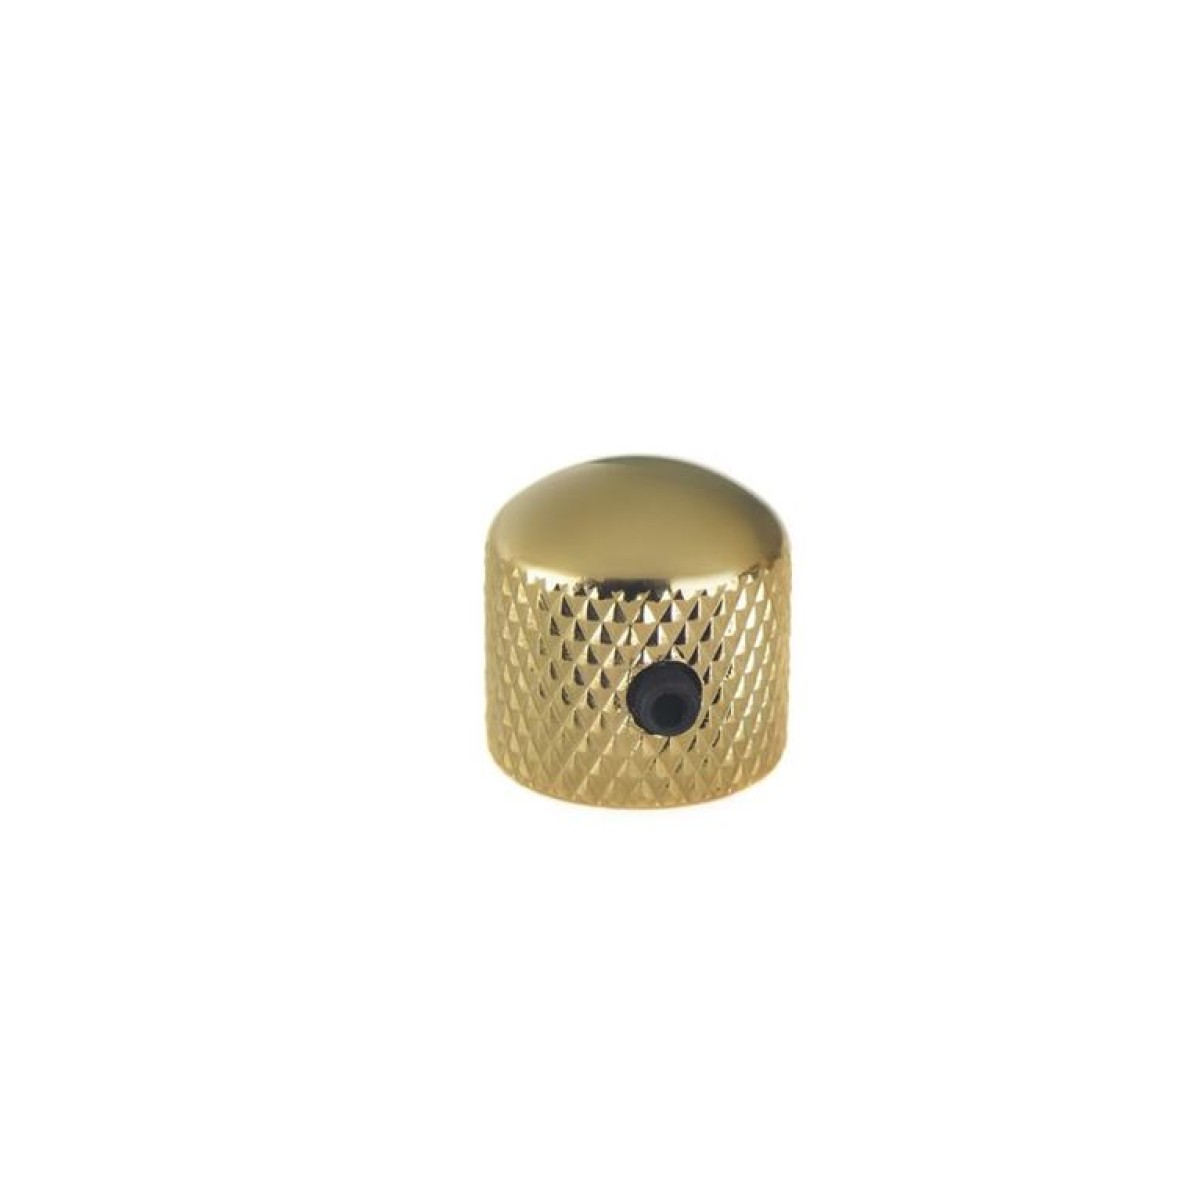 SAMWOO NS006 GD Καπάκι Ποτενσιόμετρου με βίδα, Χρυσό